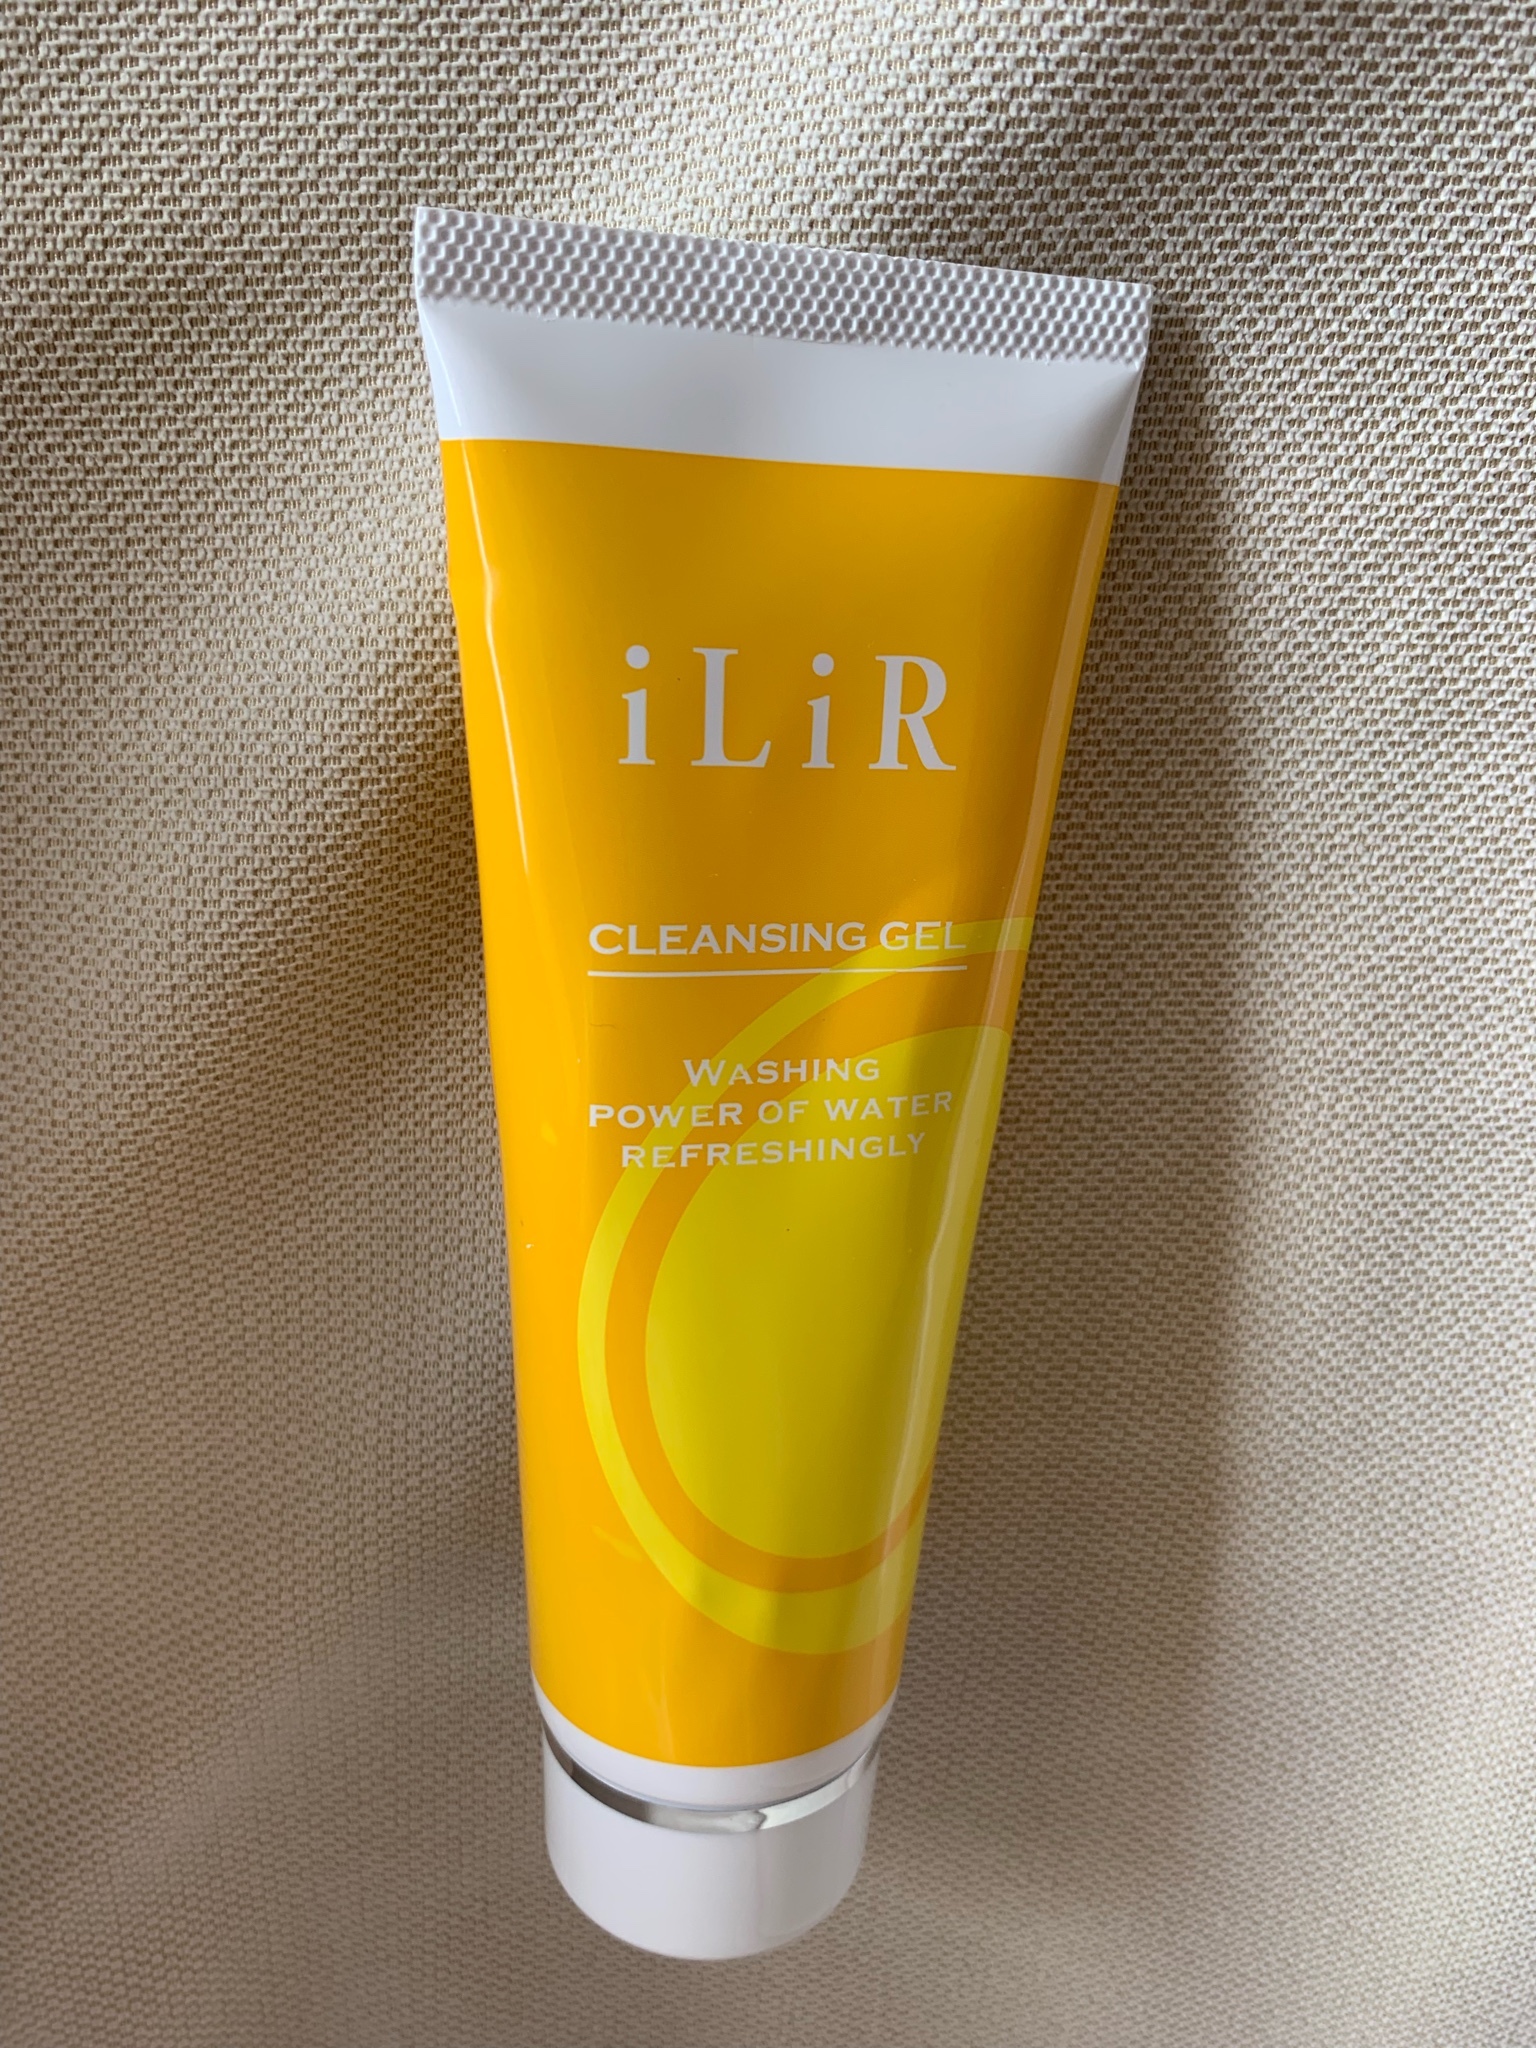 iLiR (イリアール) / メイクと肌汚れのクレンジングジェルの公式商品 